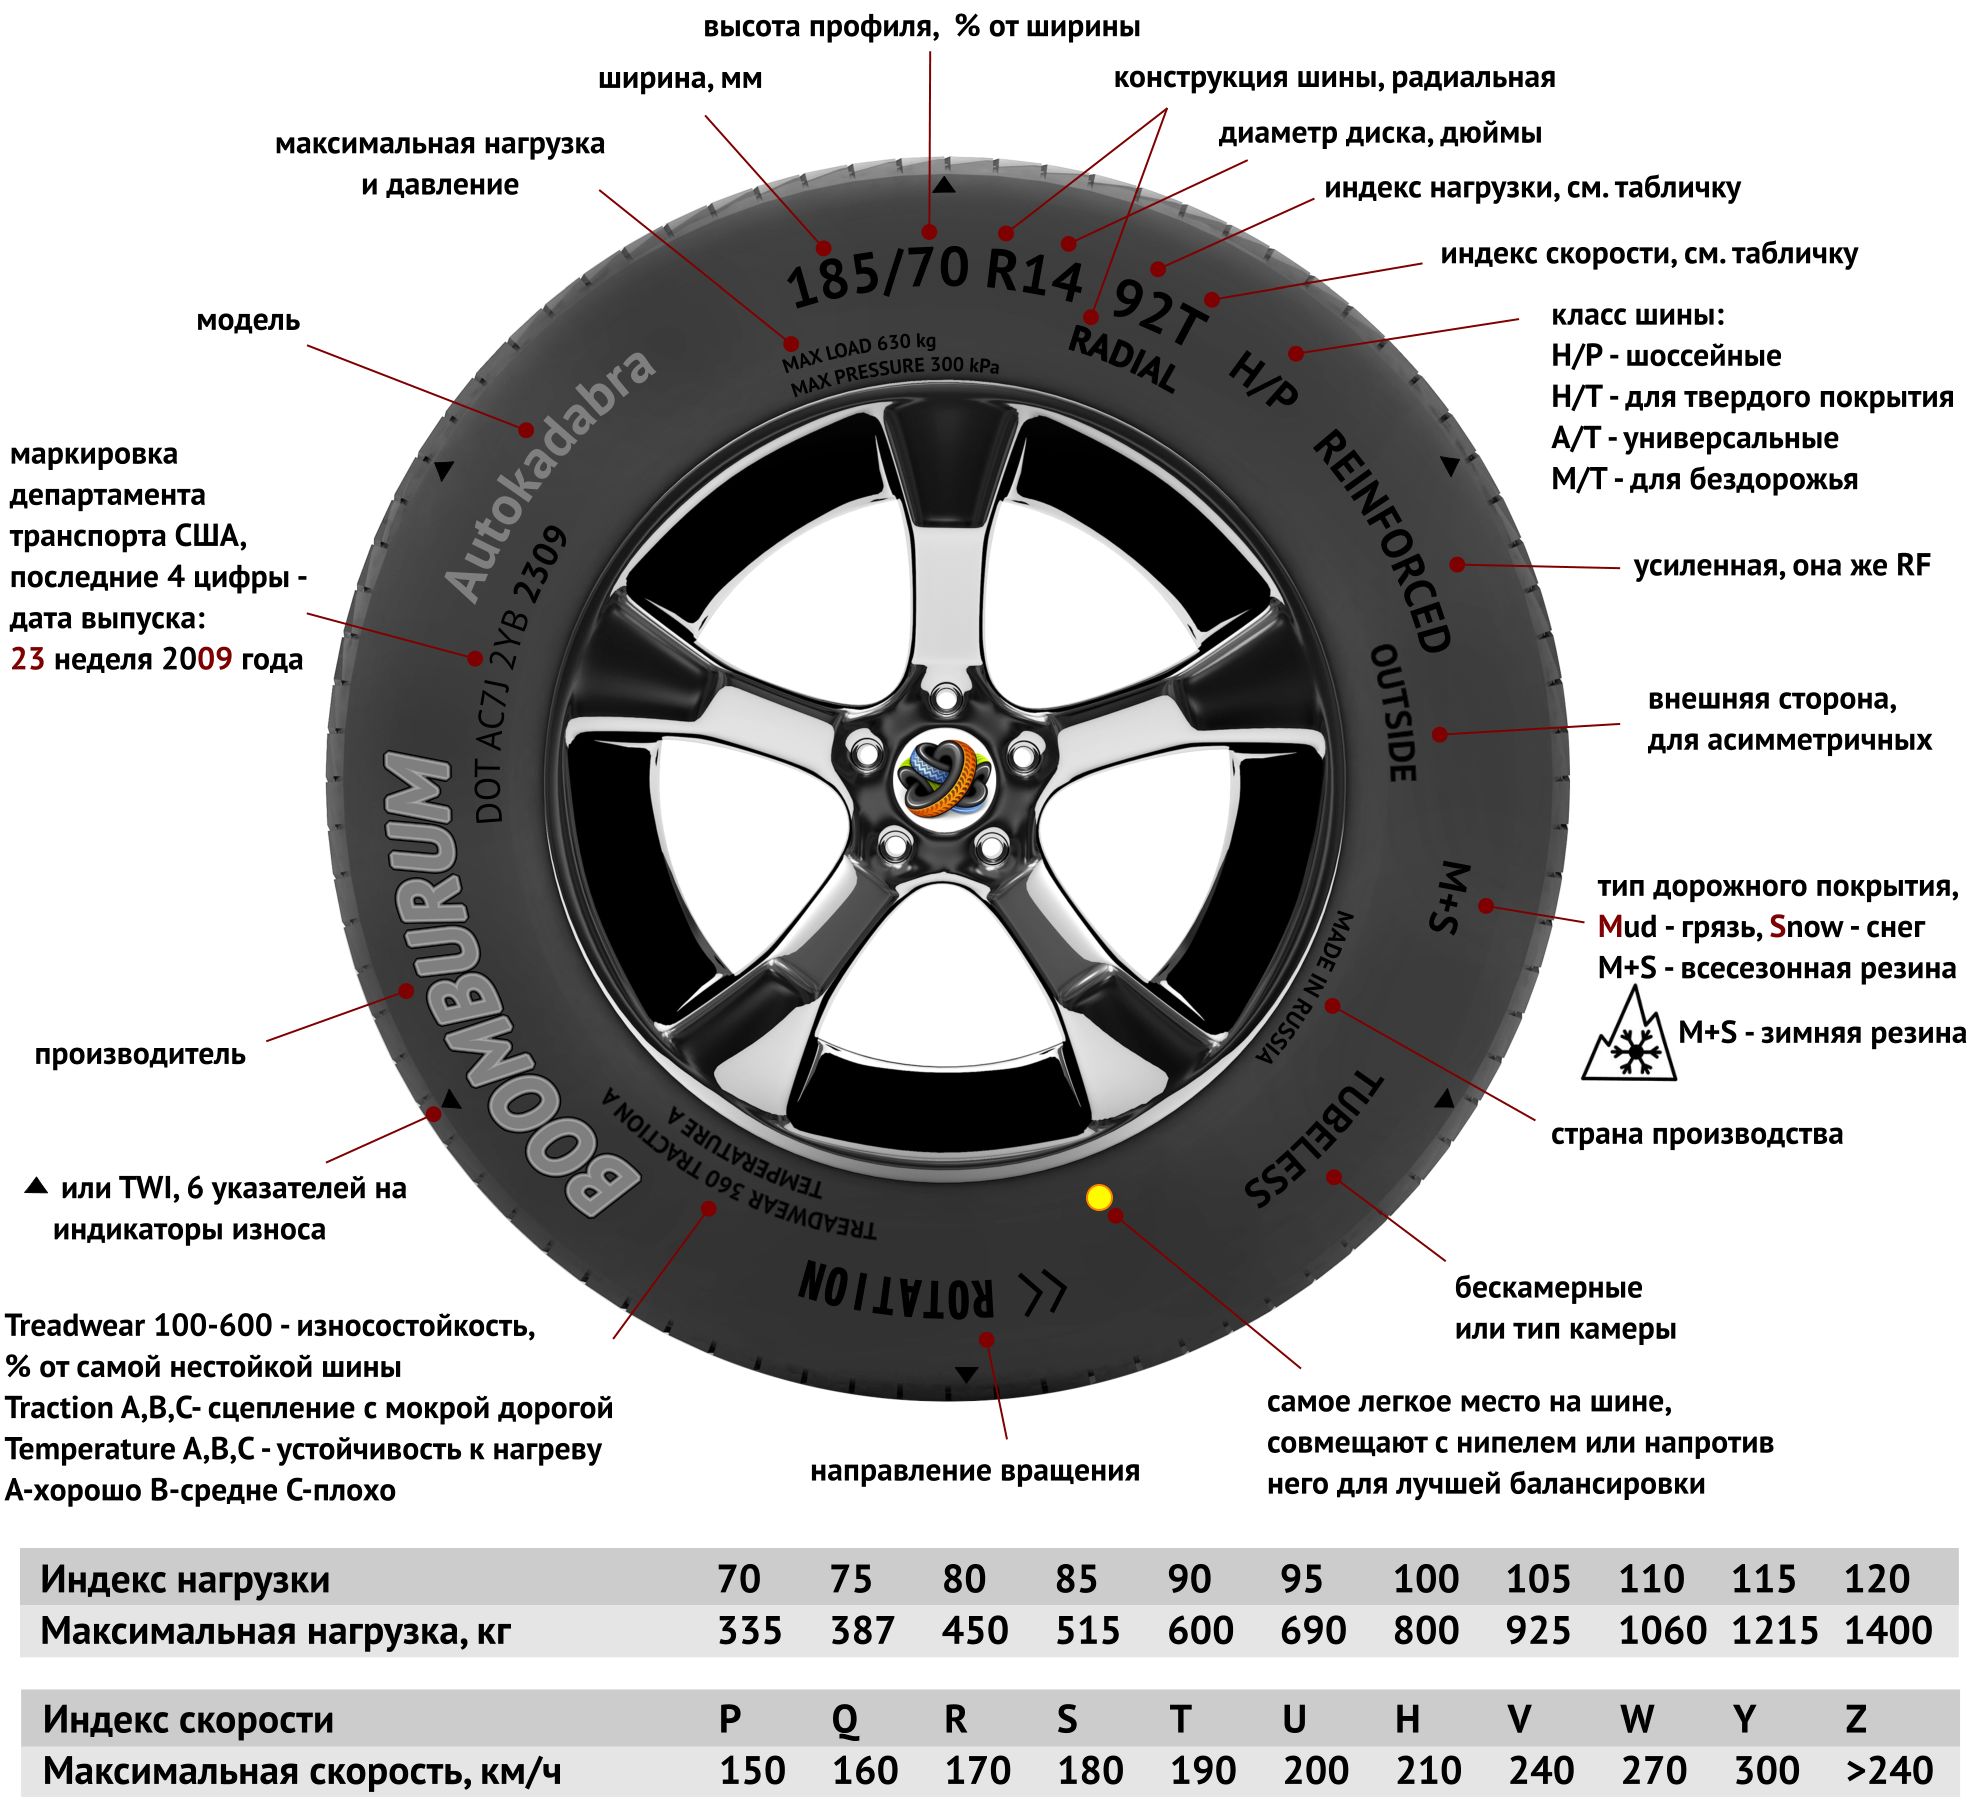 Стандарты и правила маркировки шин легковых автомобилей